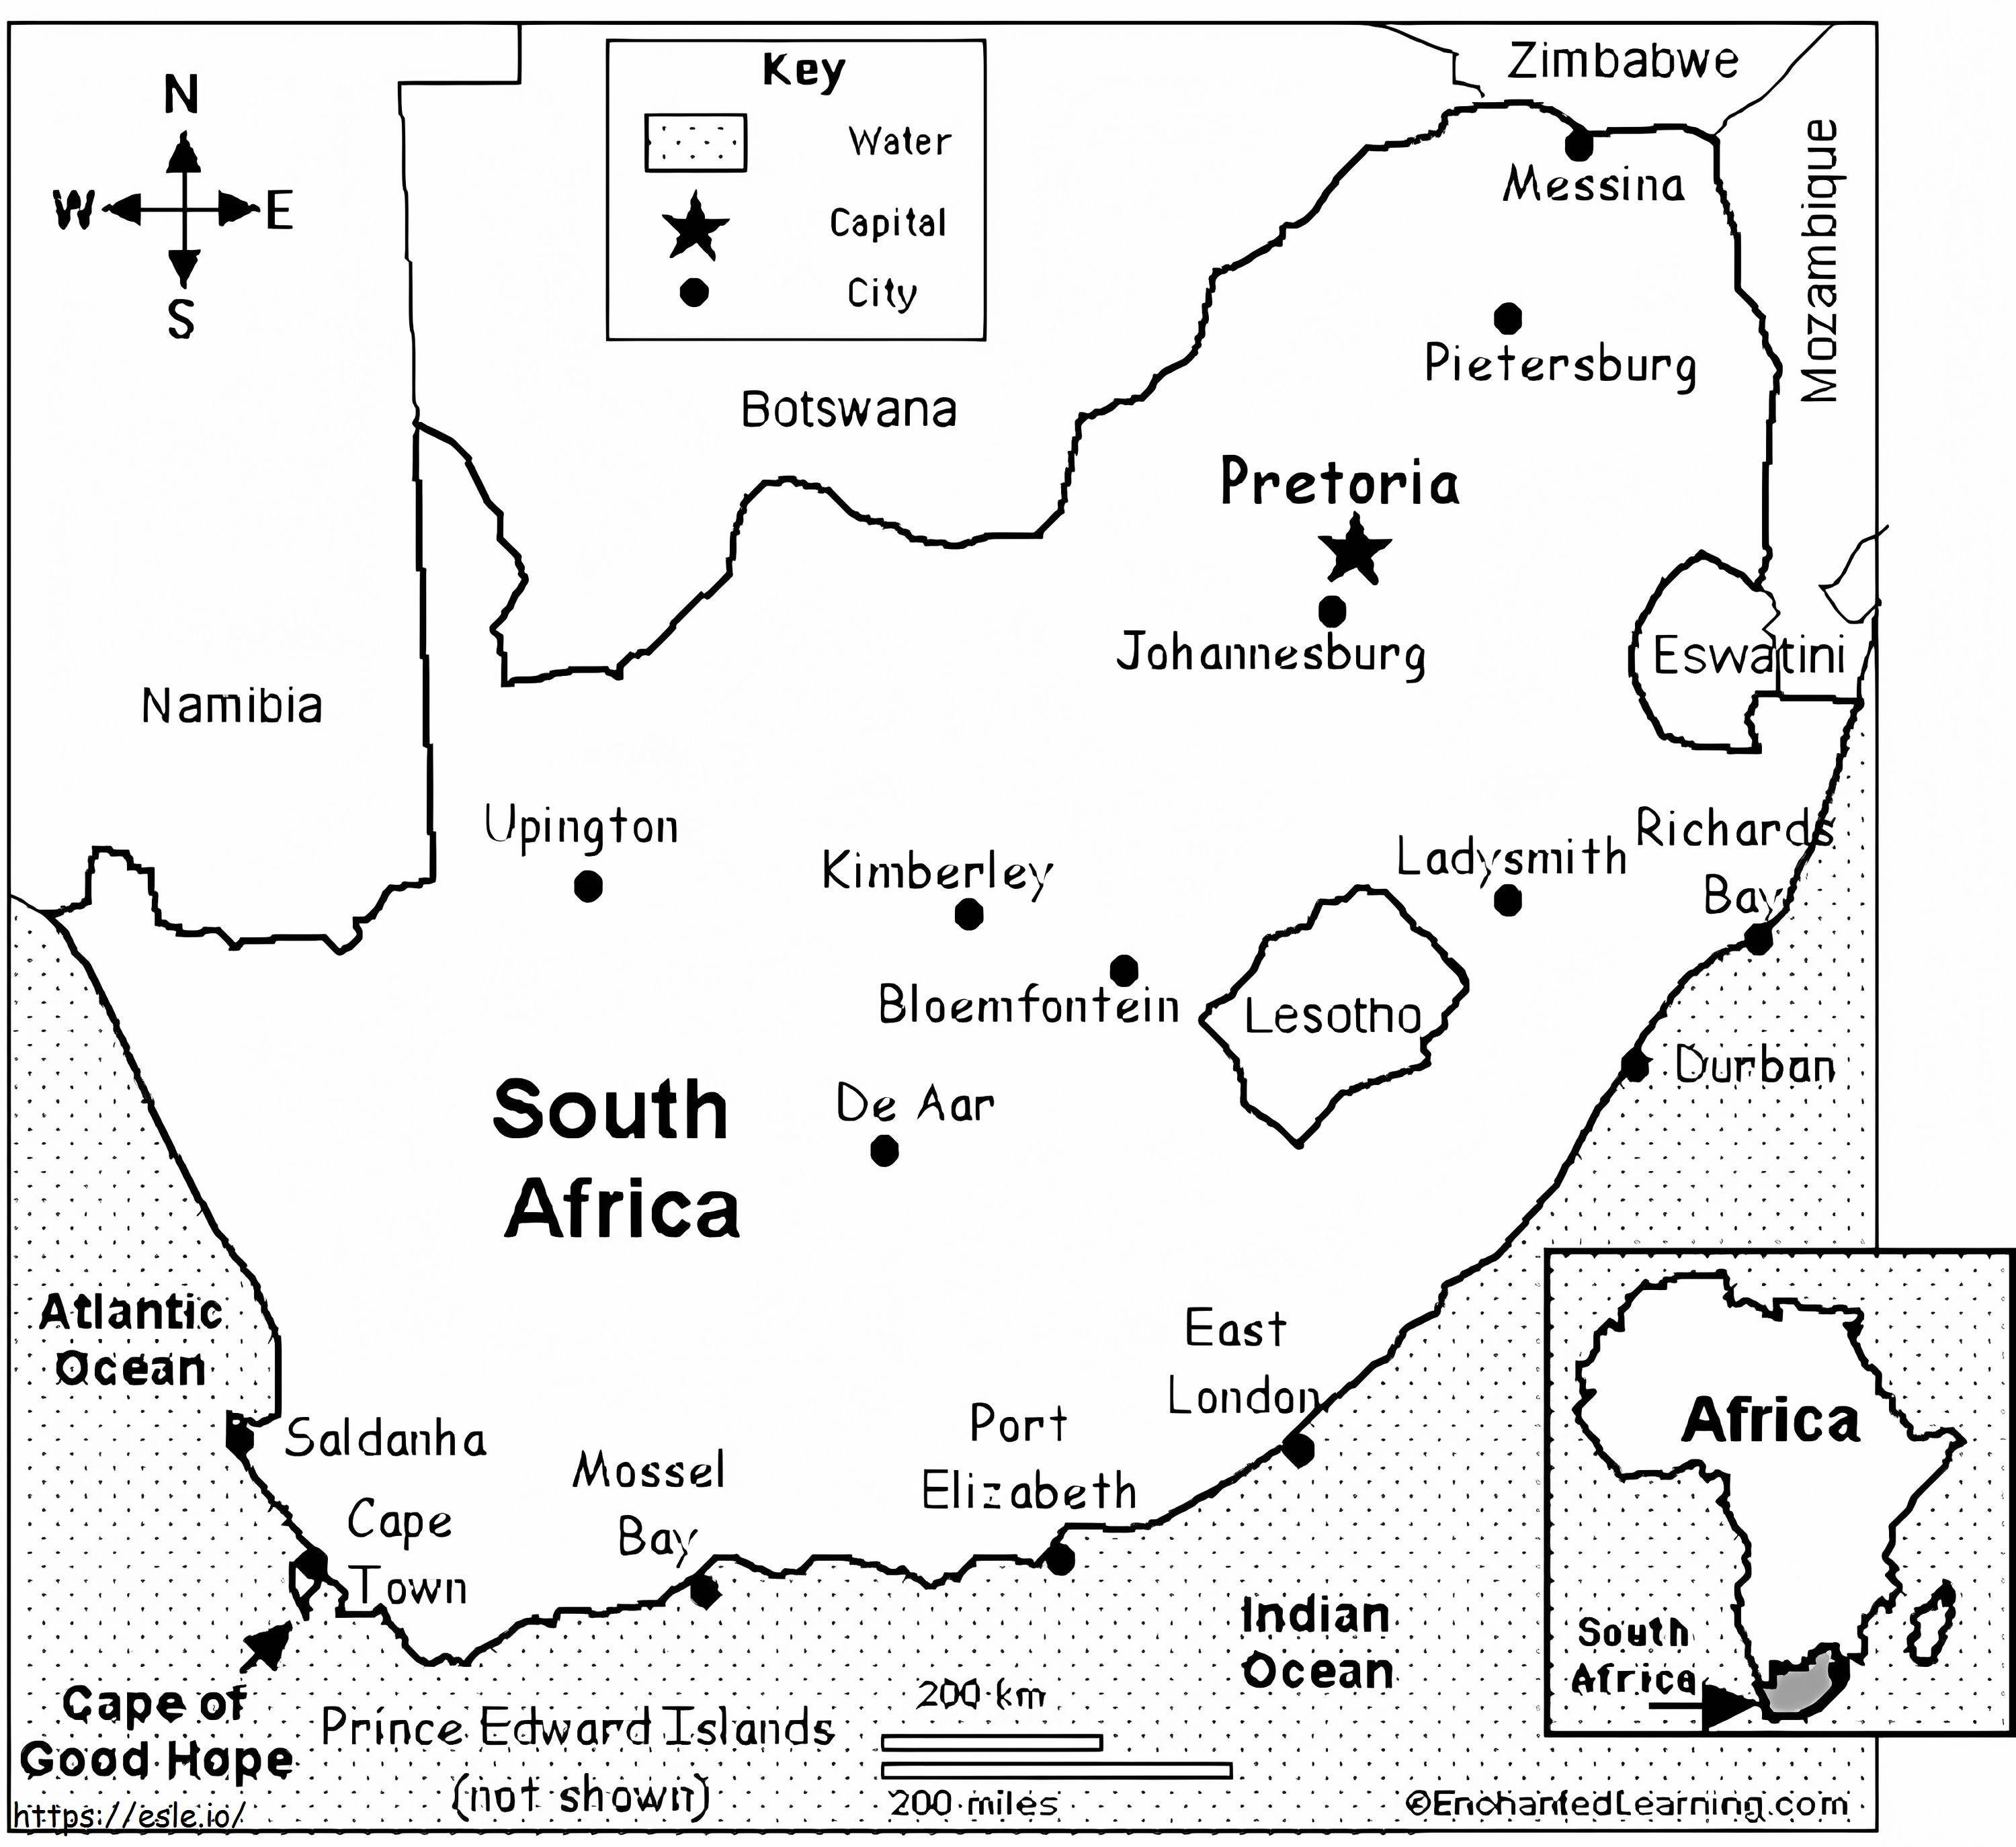 Peta Afrika Selatan 1 Gambar Mewarnai